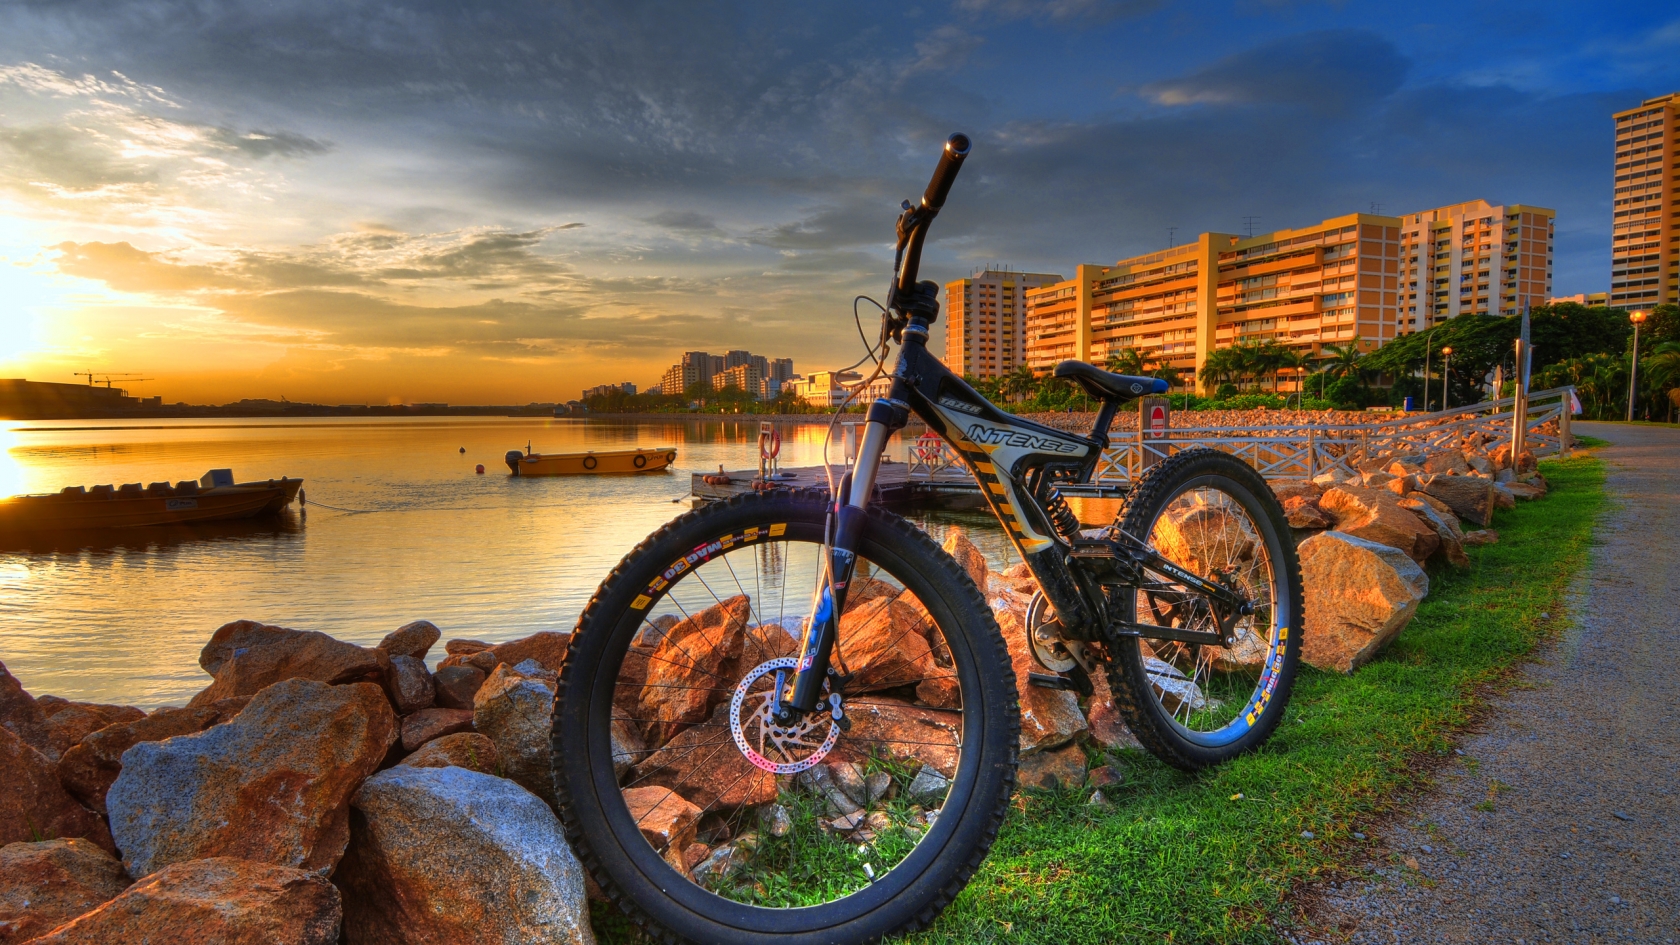 HDR City Bike for 1680 x 945 HDTV resolution